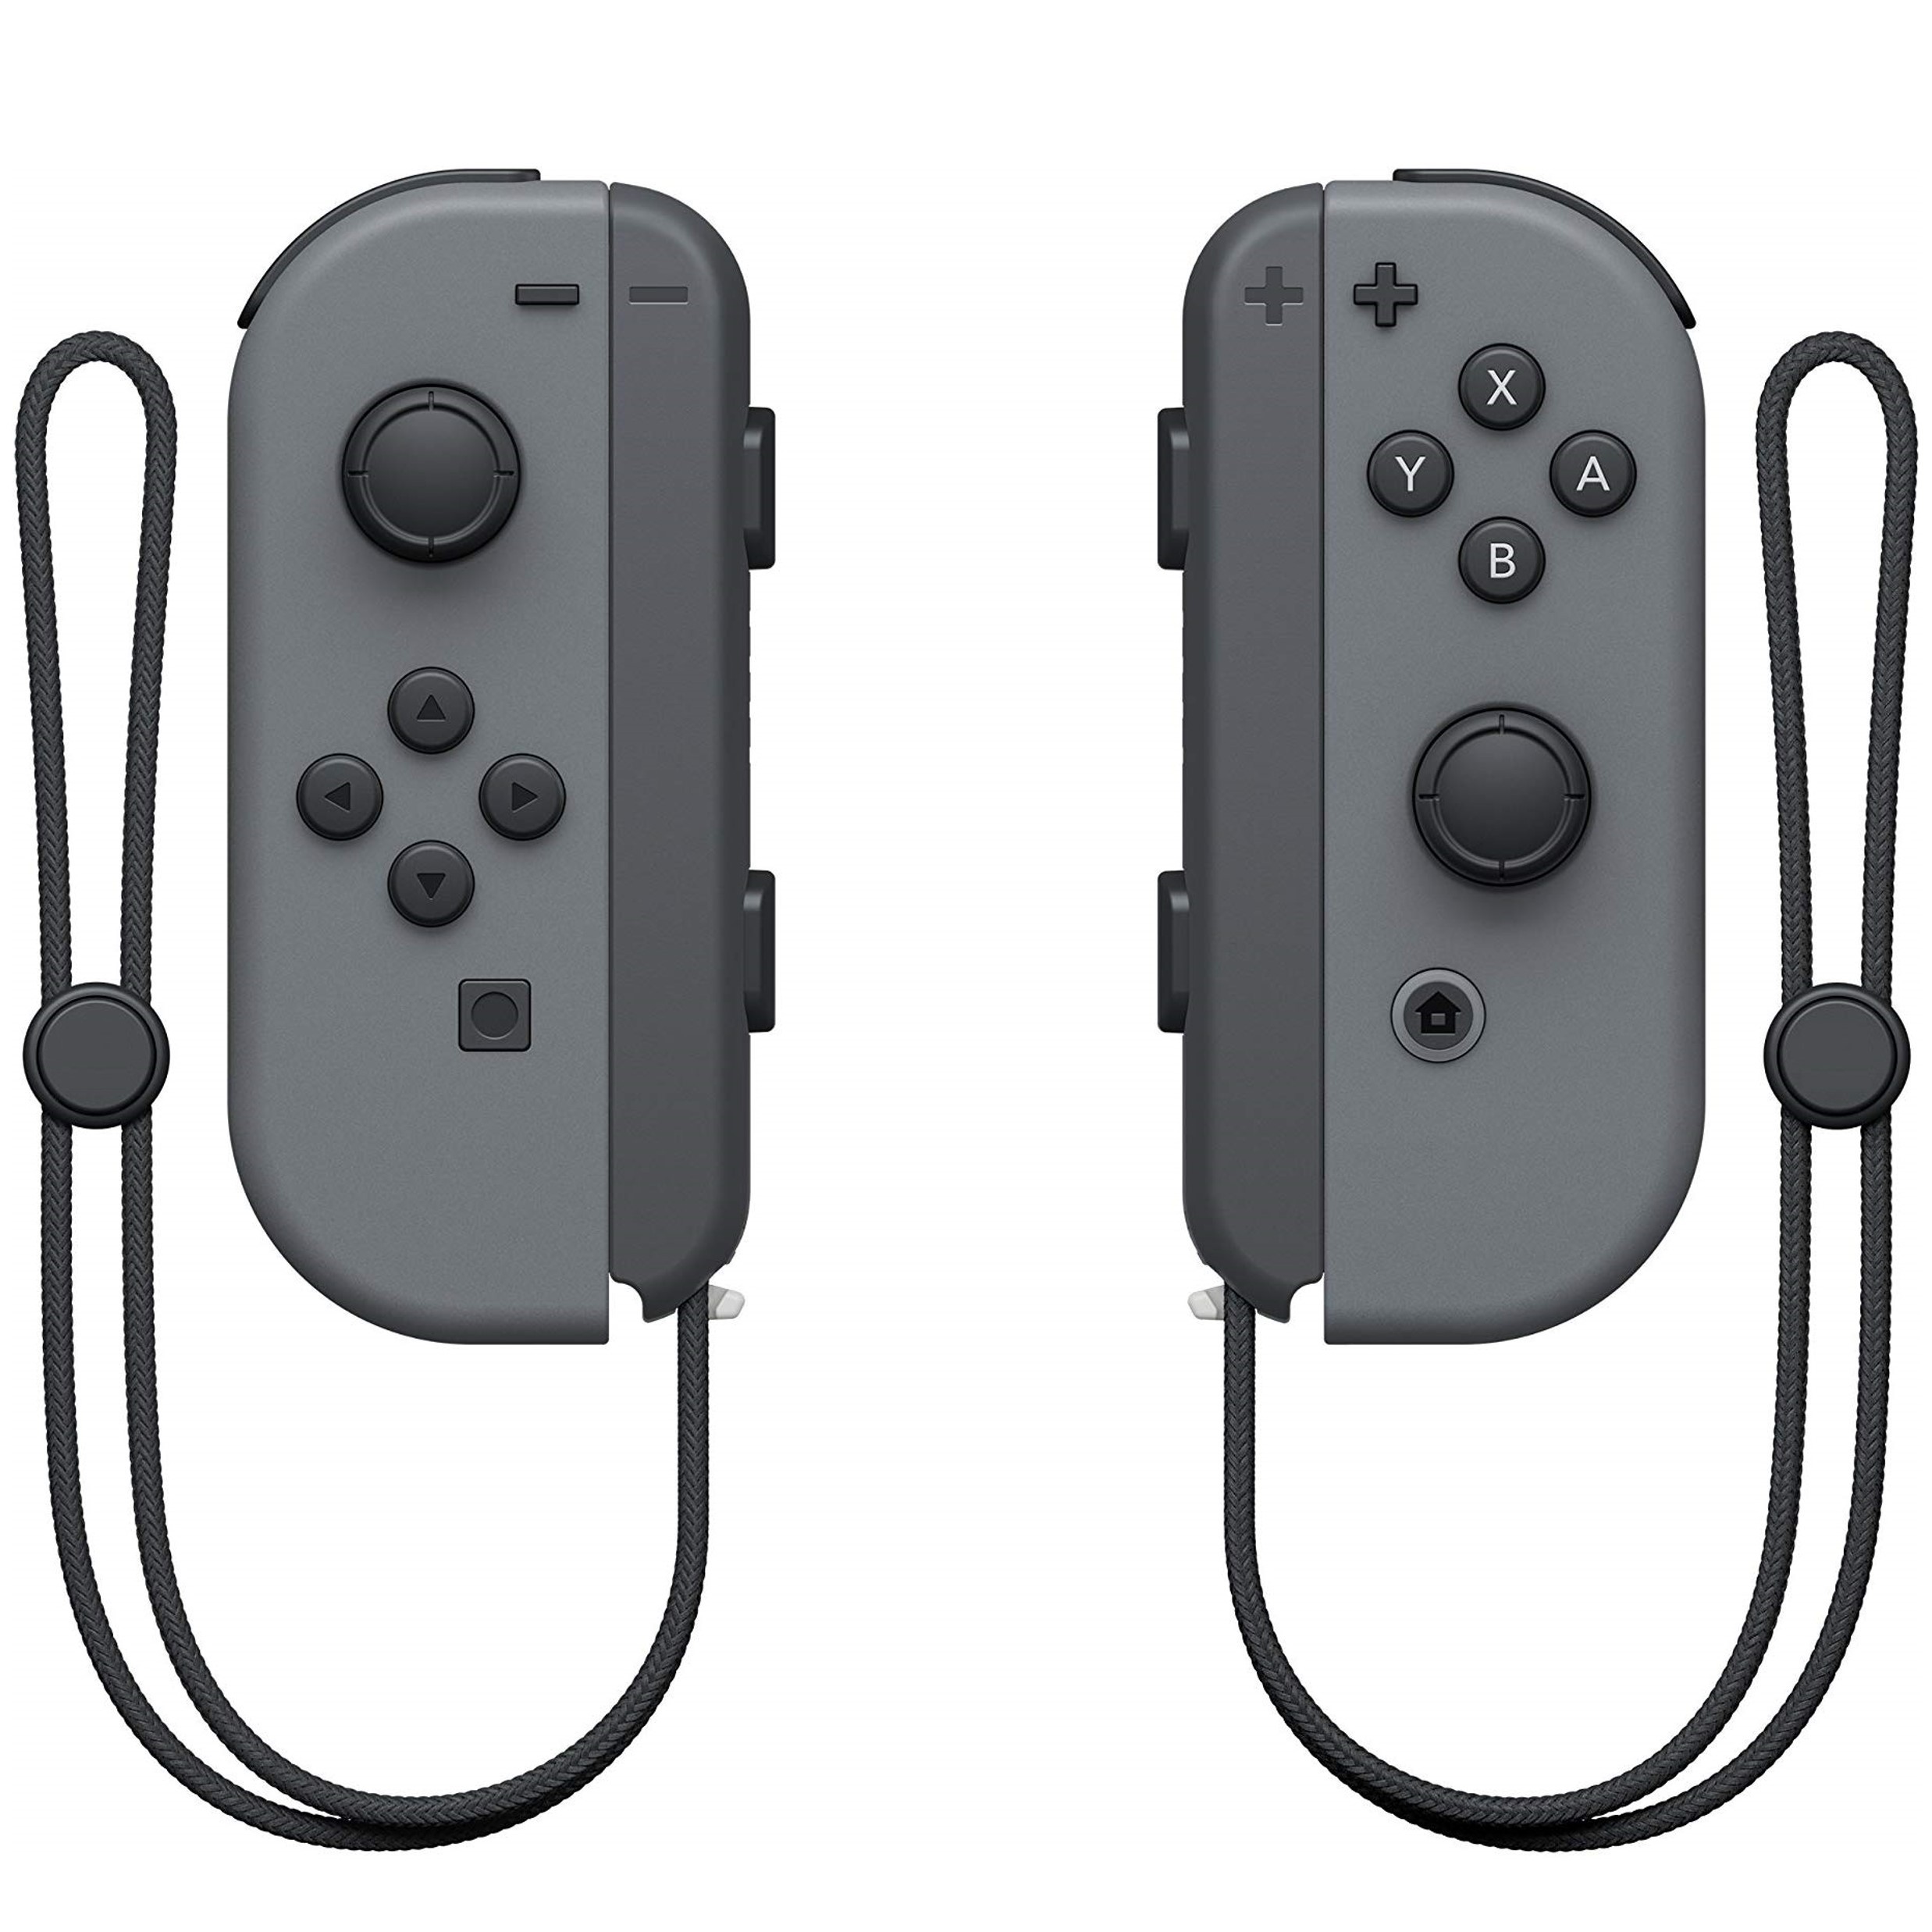 Nieuwe Wireless Joy-Con Controllers (L & R) voor de Nintendo Switch - Grey Kopen | Nintendo Switch Hardware